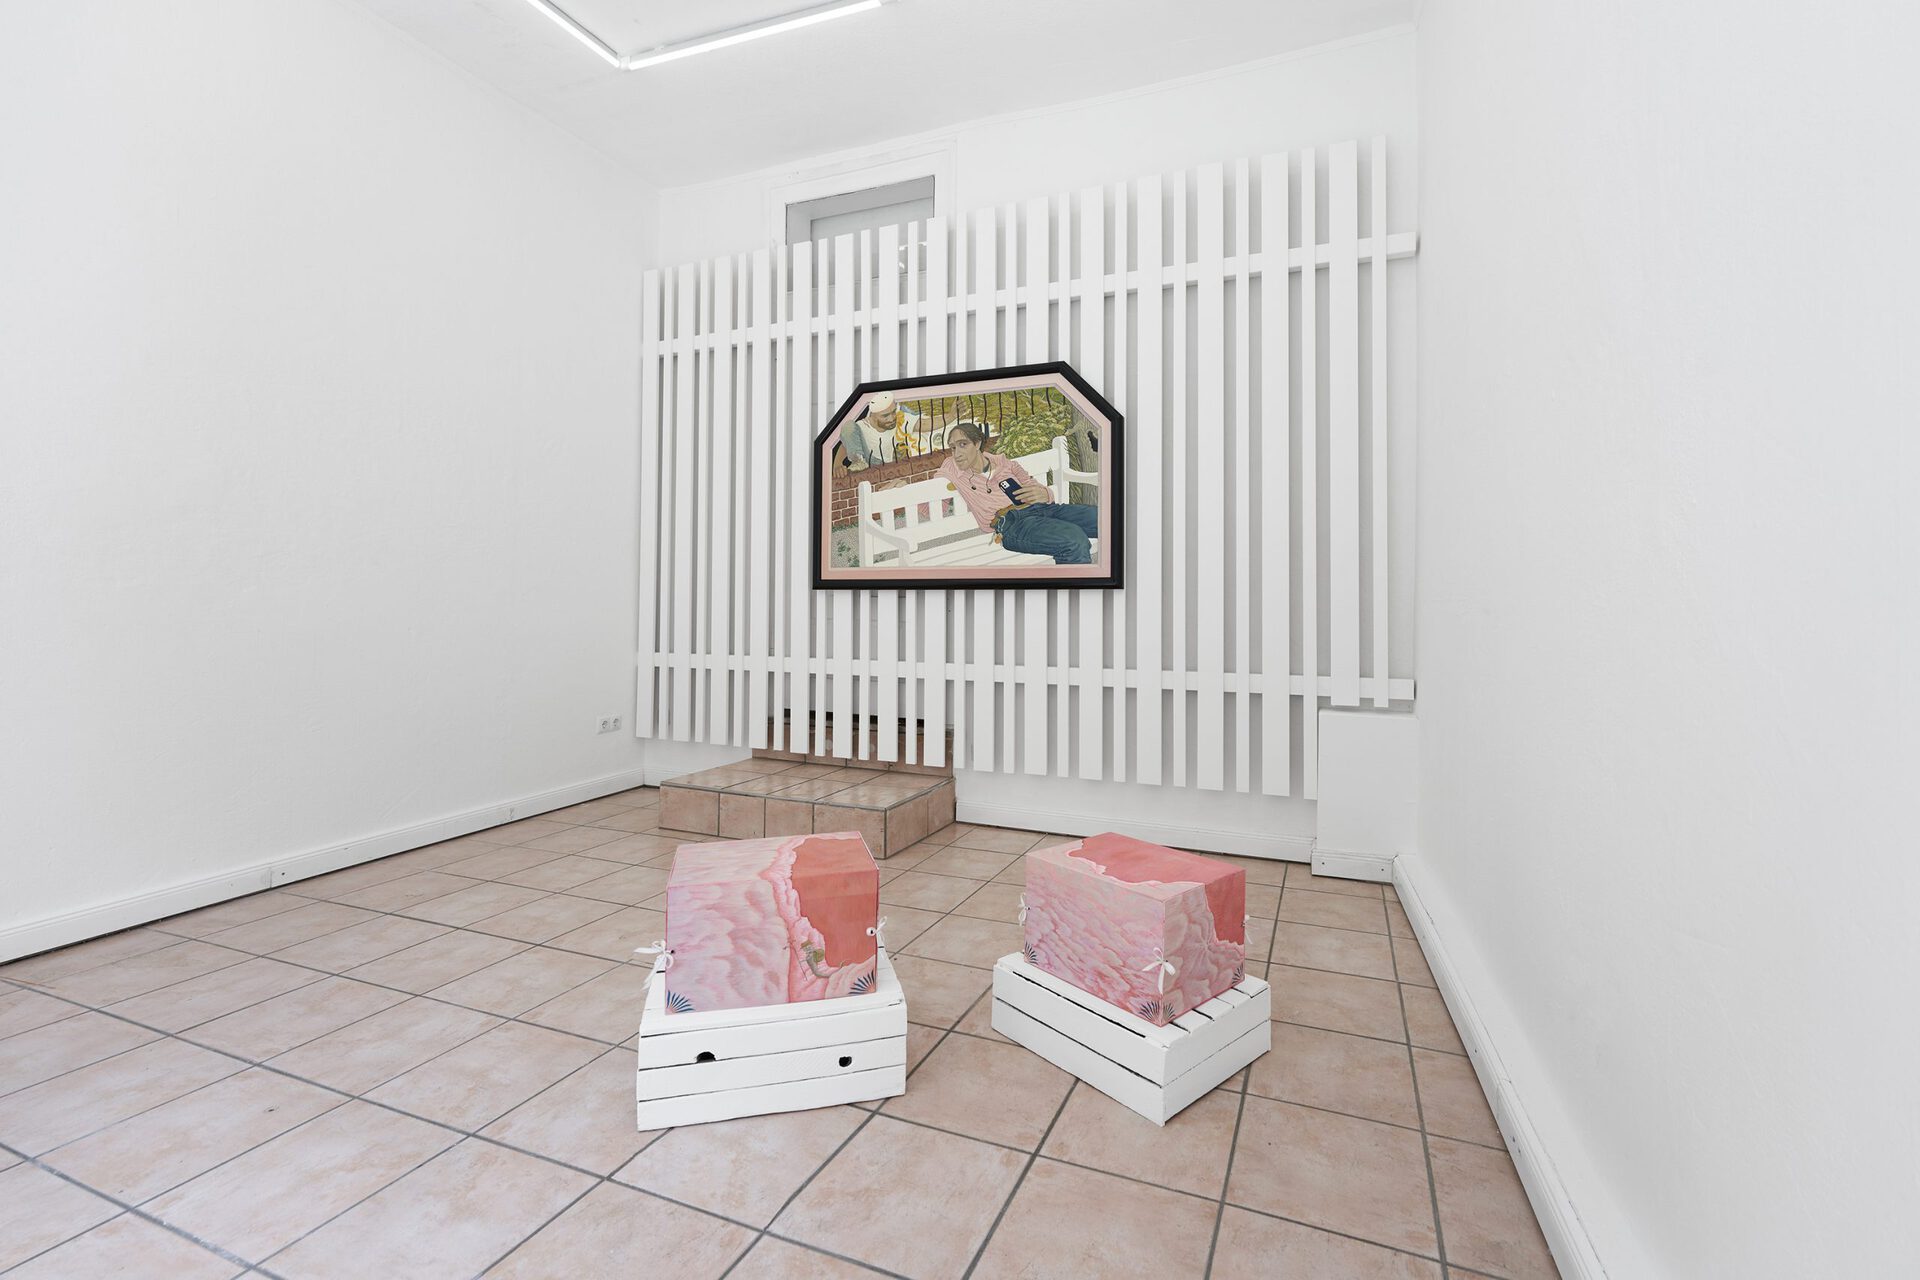 Yong Xiang Li, Superfluous, installation view, Schwabinggrad, Munich, 2021